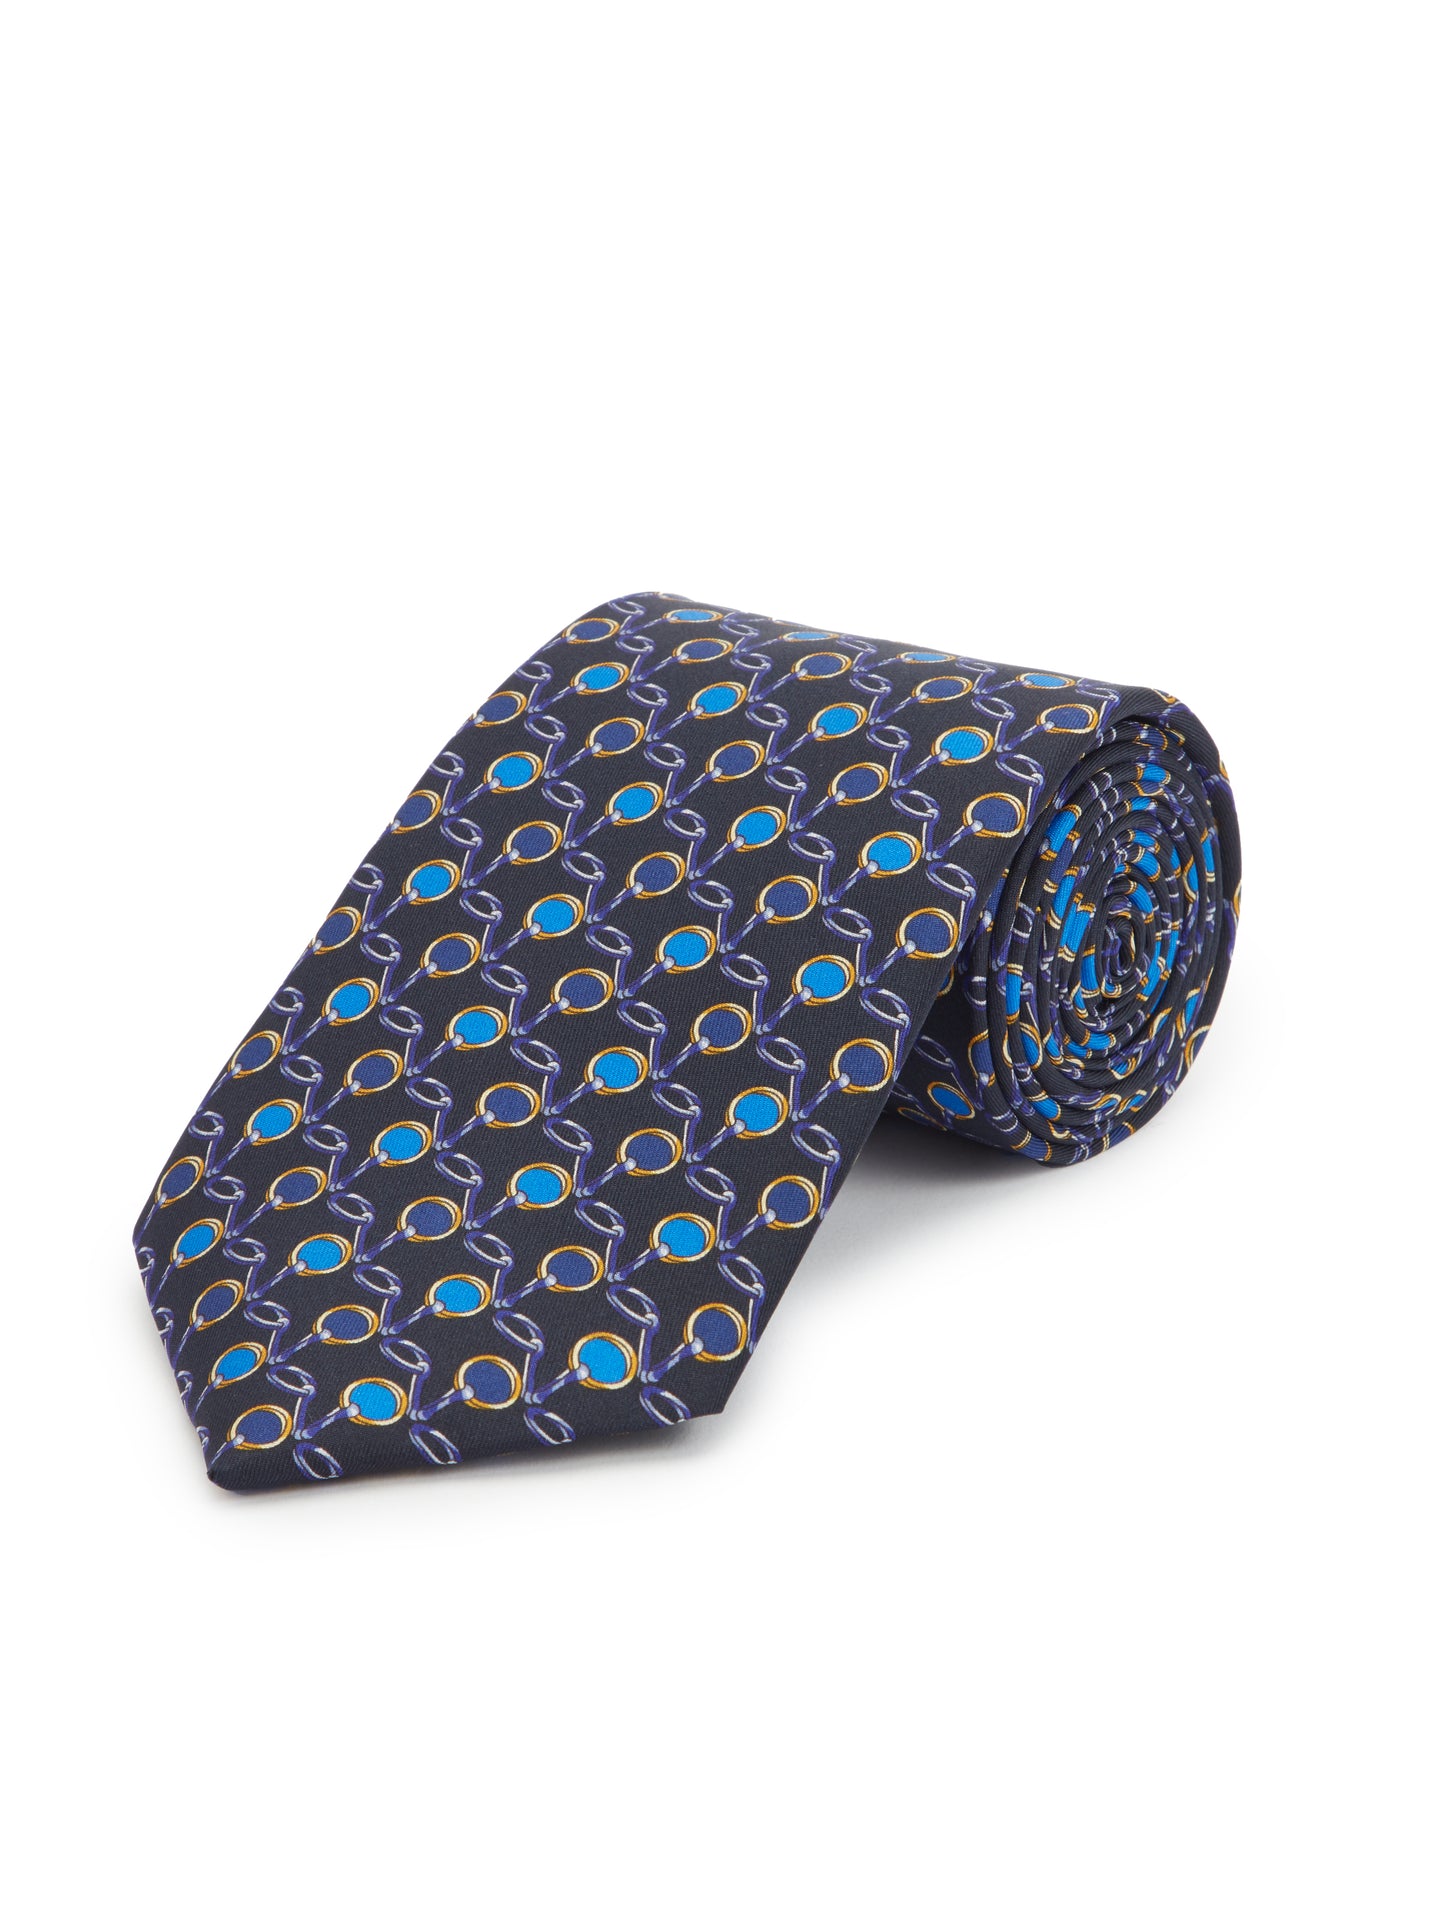 Stirrup Design Tie - Navy/ Blue